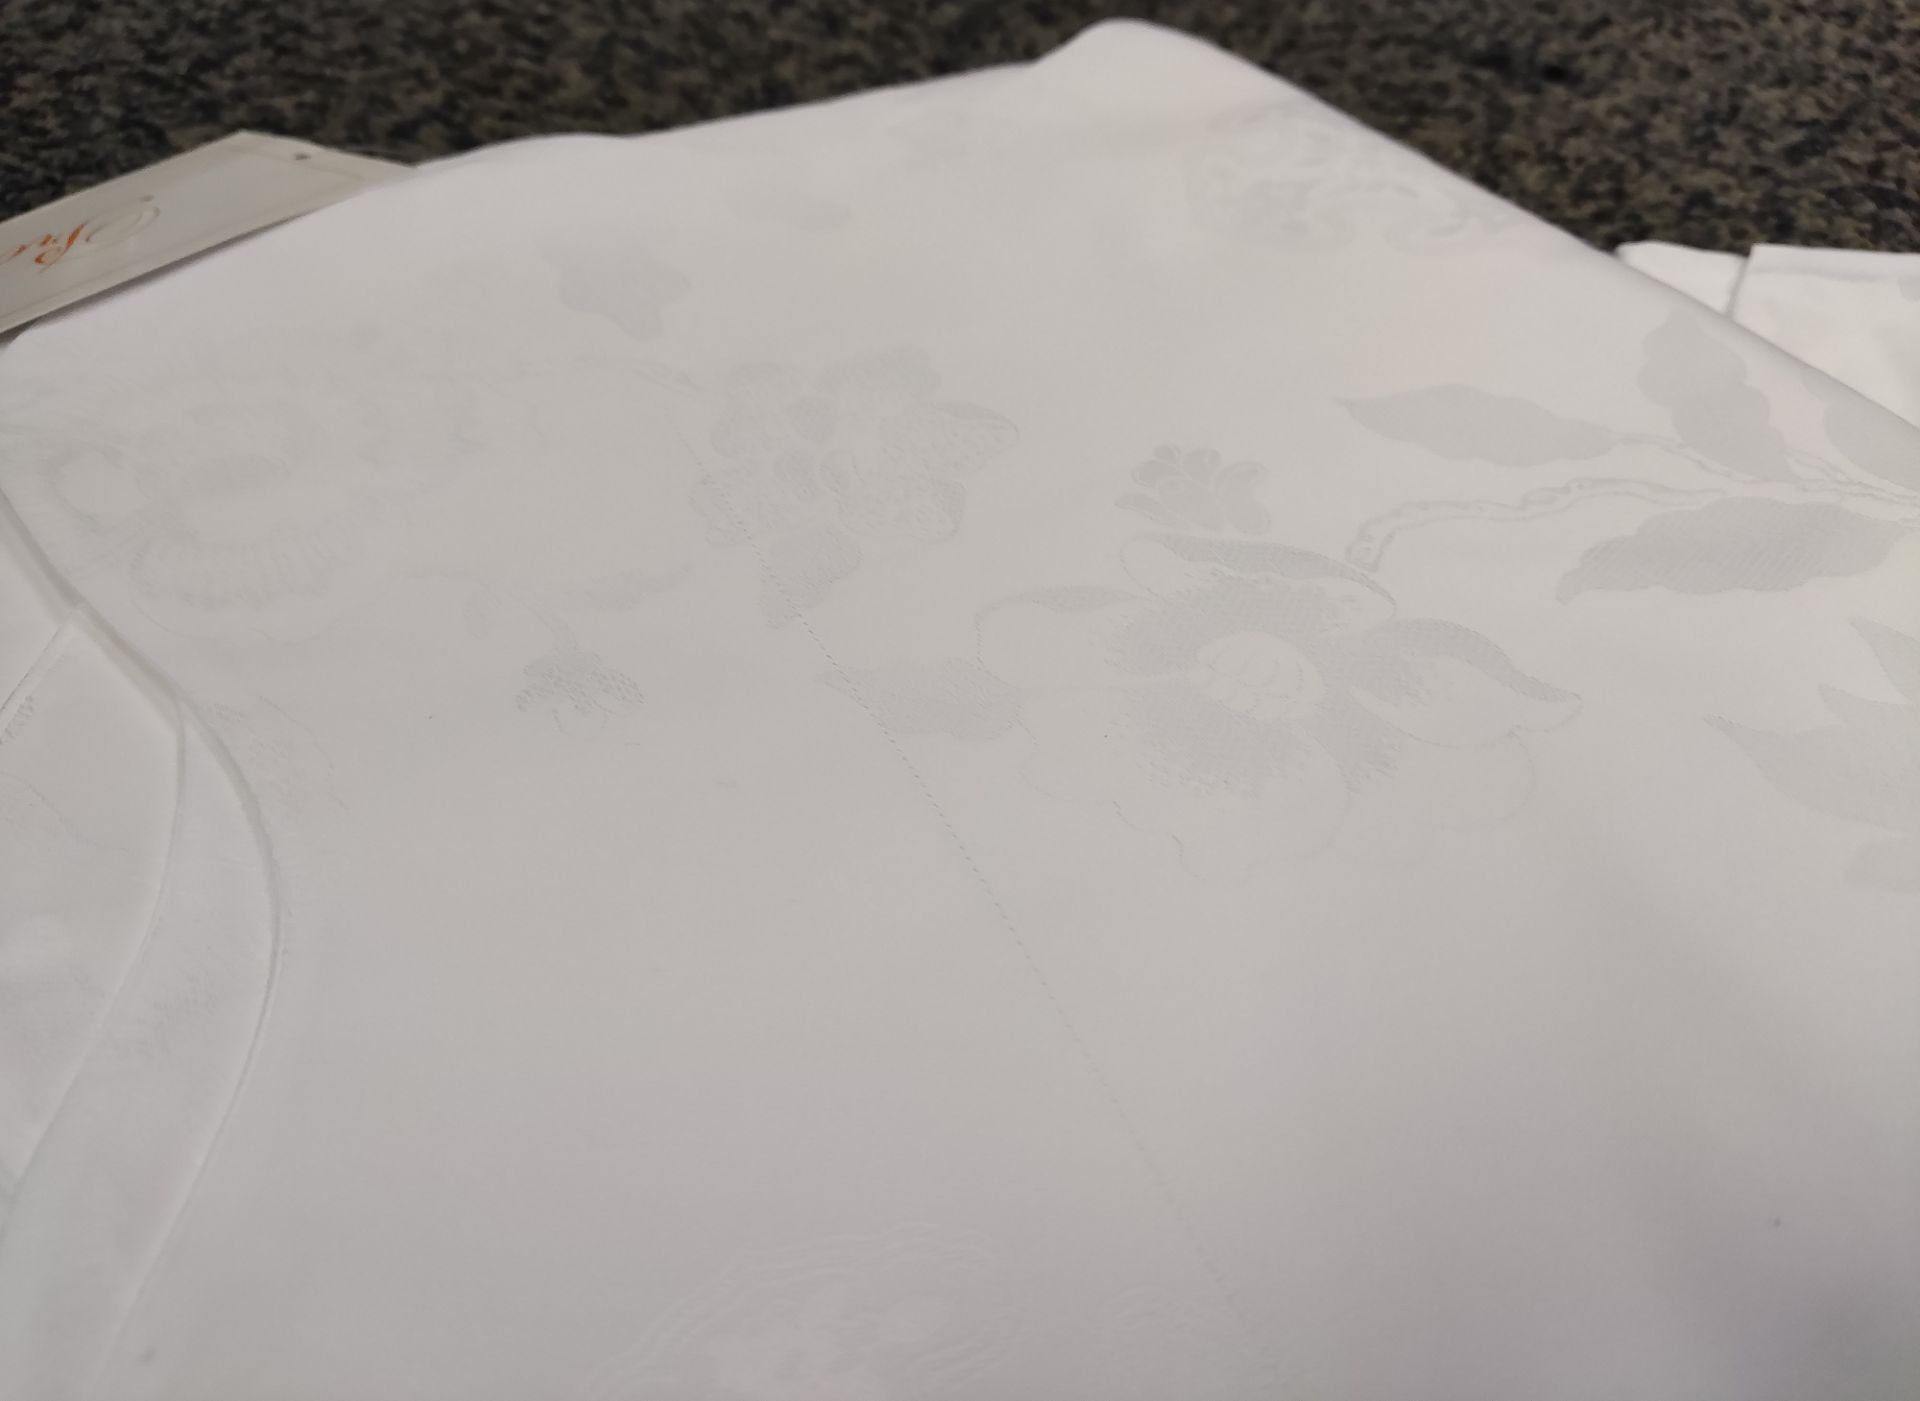 Pair of PRATESI 'Cina Jacquard' 100% Cotton Pillow Shams 65x65cm - Original Price £800 - Unused - Image 3 of 4